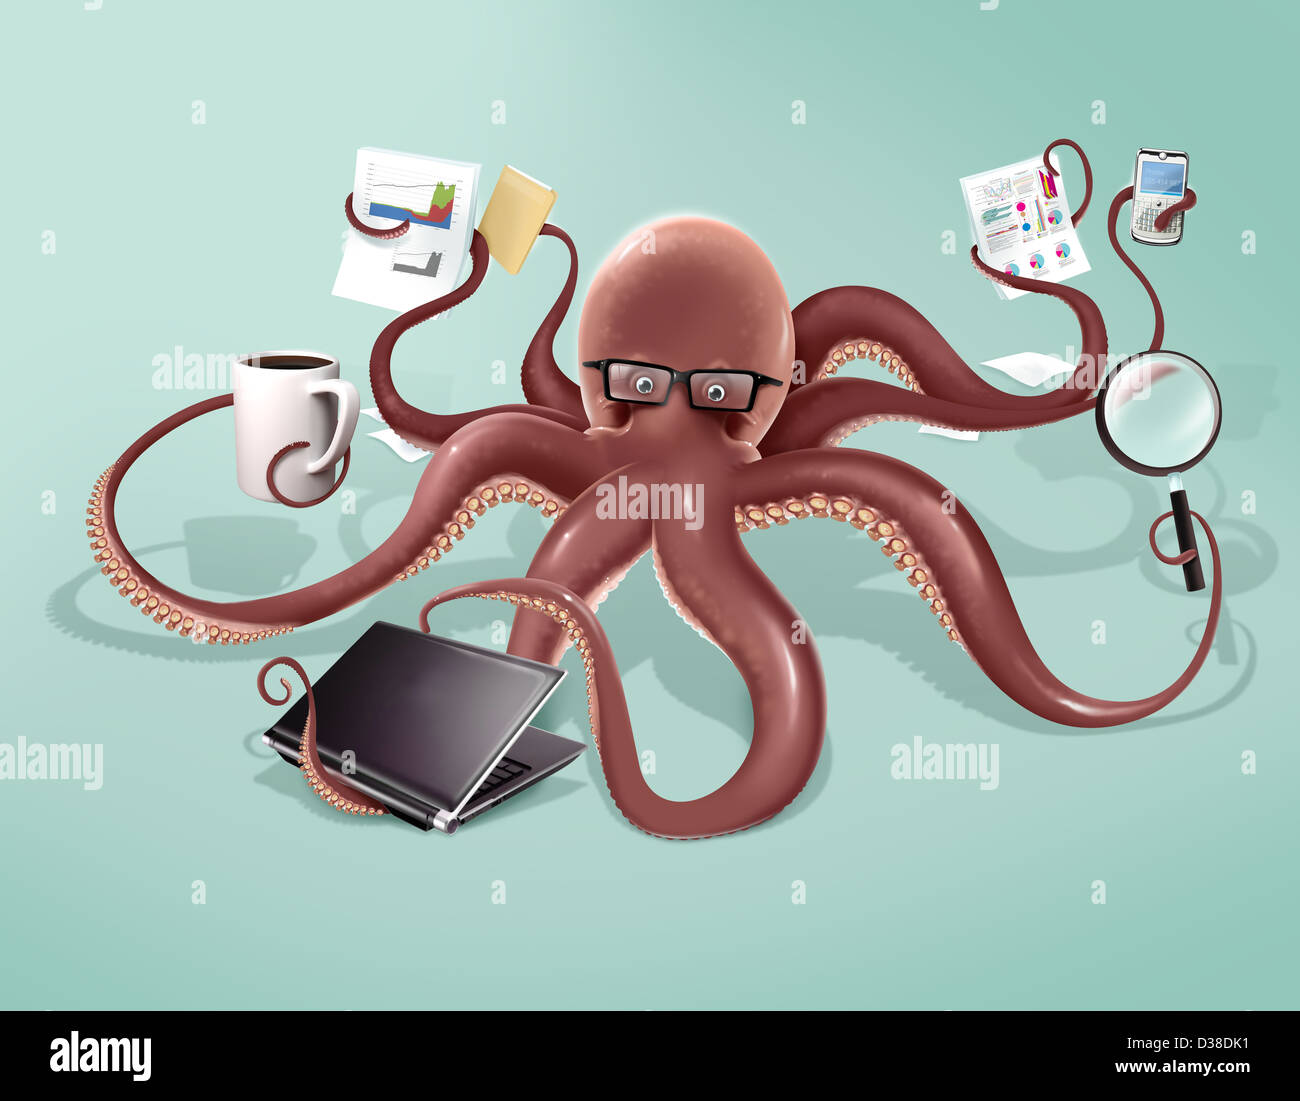 Image d'illustration d'octopus multi tasking sur fond coloré Banque D'Images